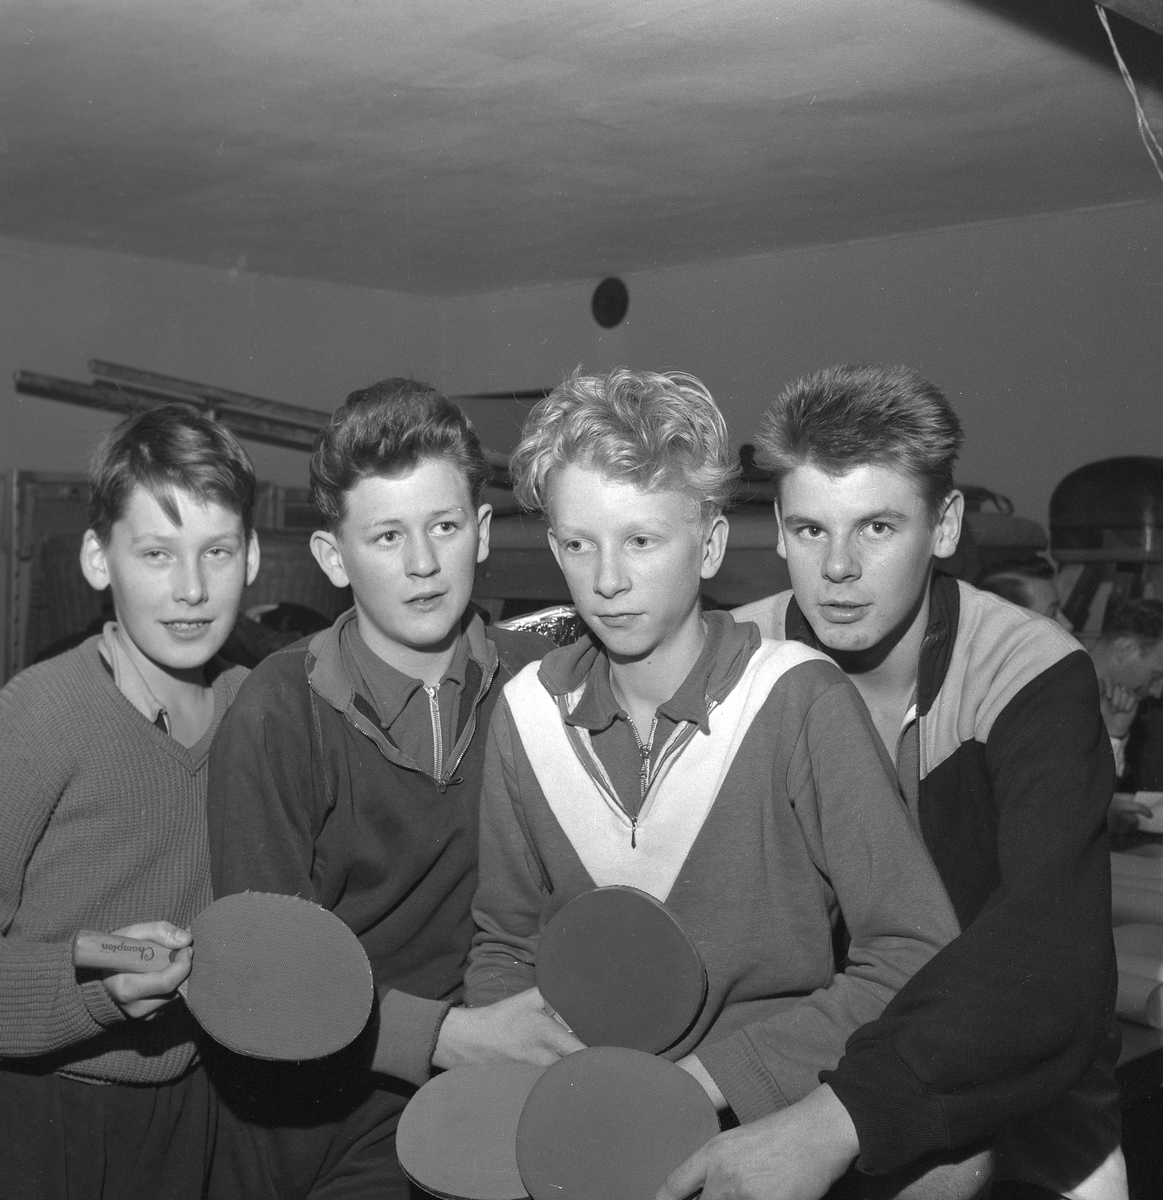 Mellansvenska BT-mästerskap.
7 januari 1959.